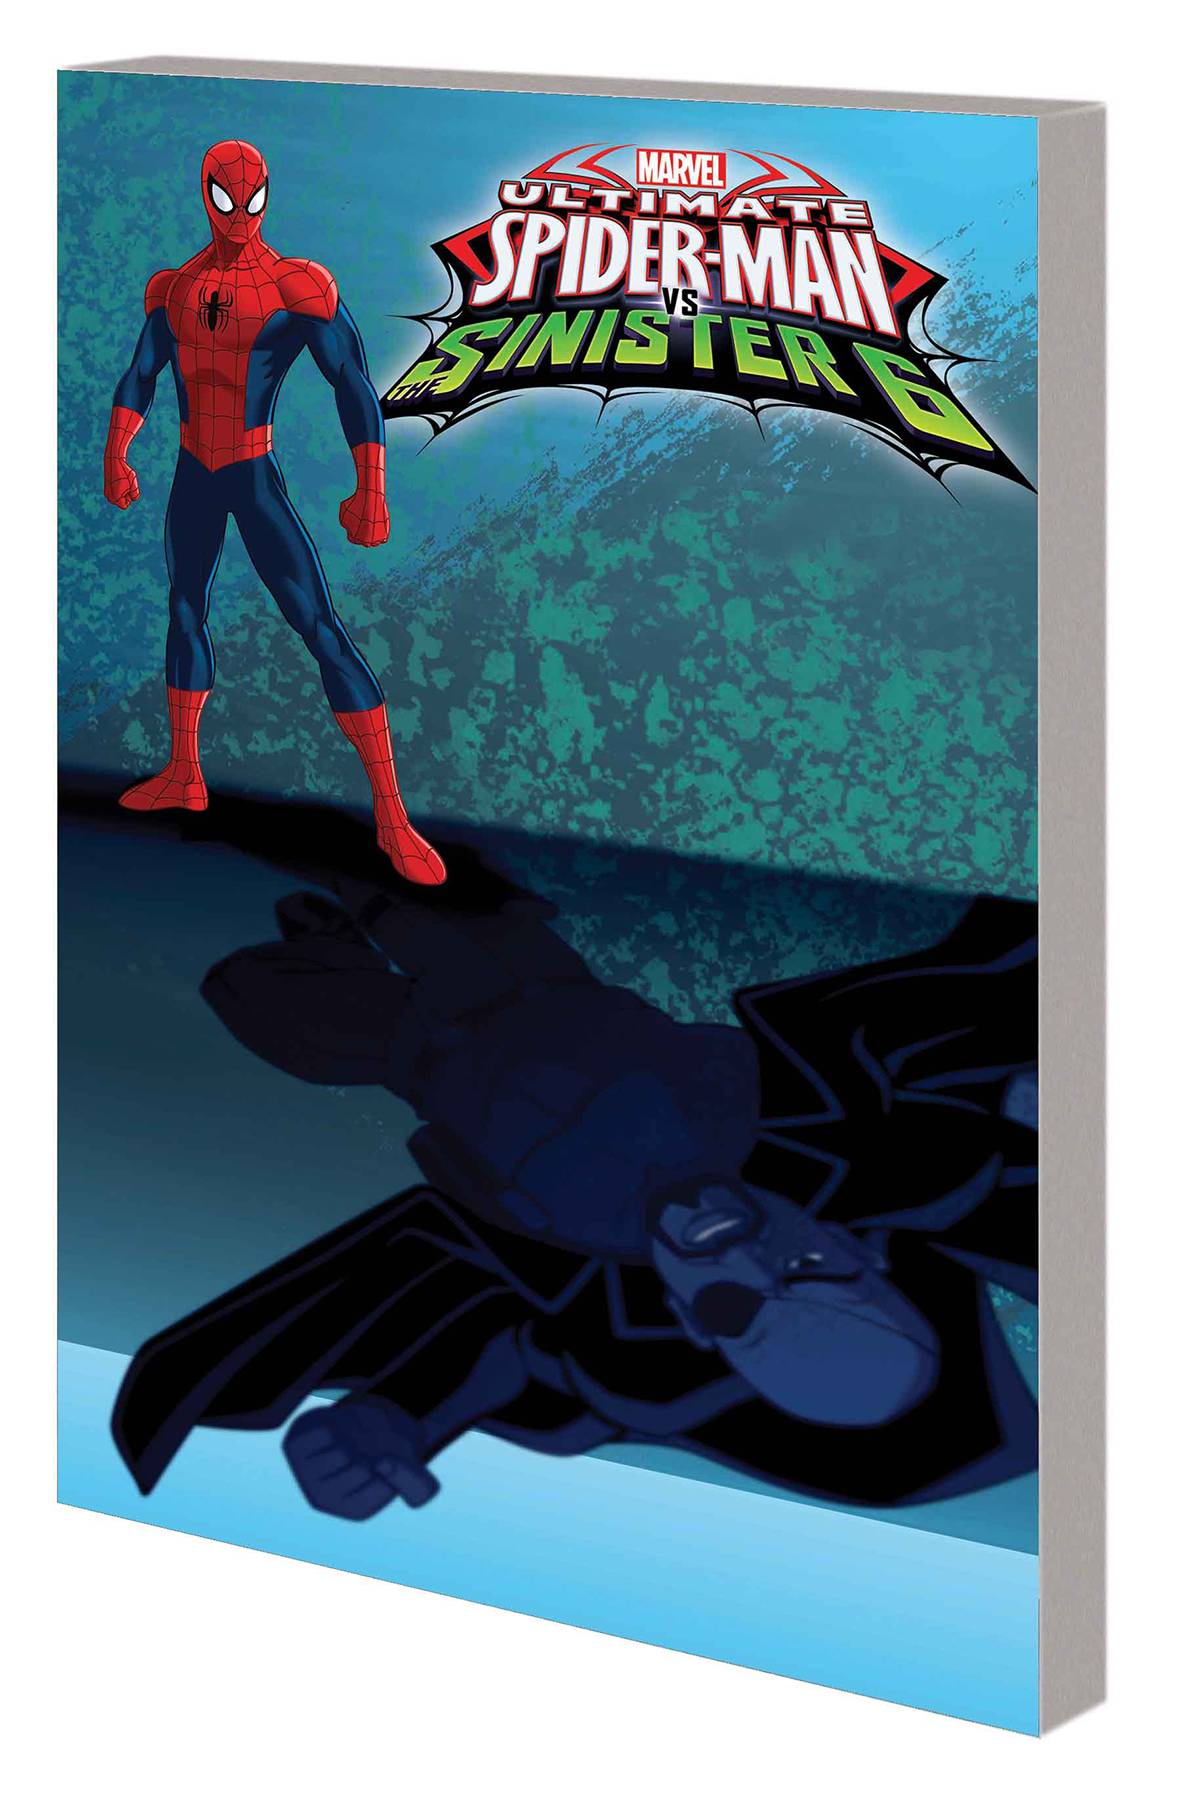 Marvel Universe Ult Spider-Man Vs Sinister Six Digest Graphic Novel Volume 3